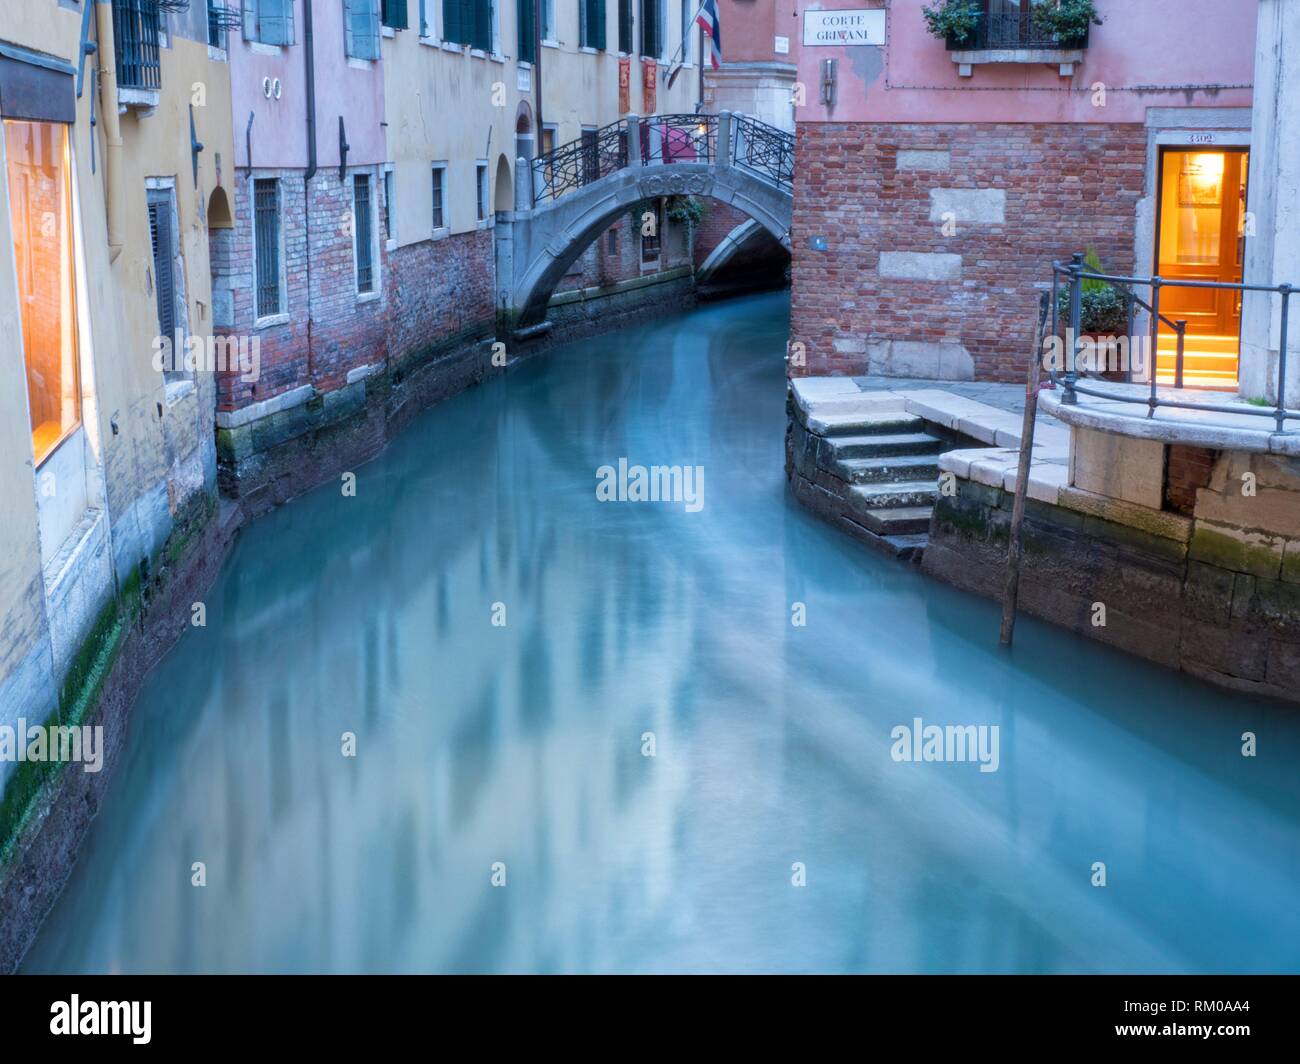 Canal de Venecia, Italia. Foto de stock